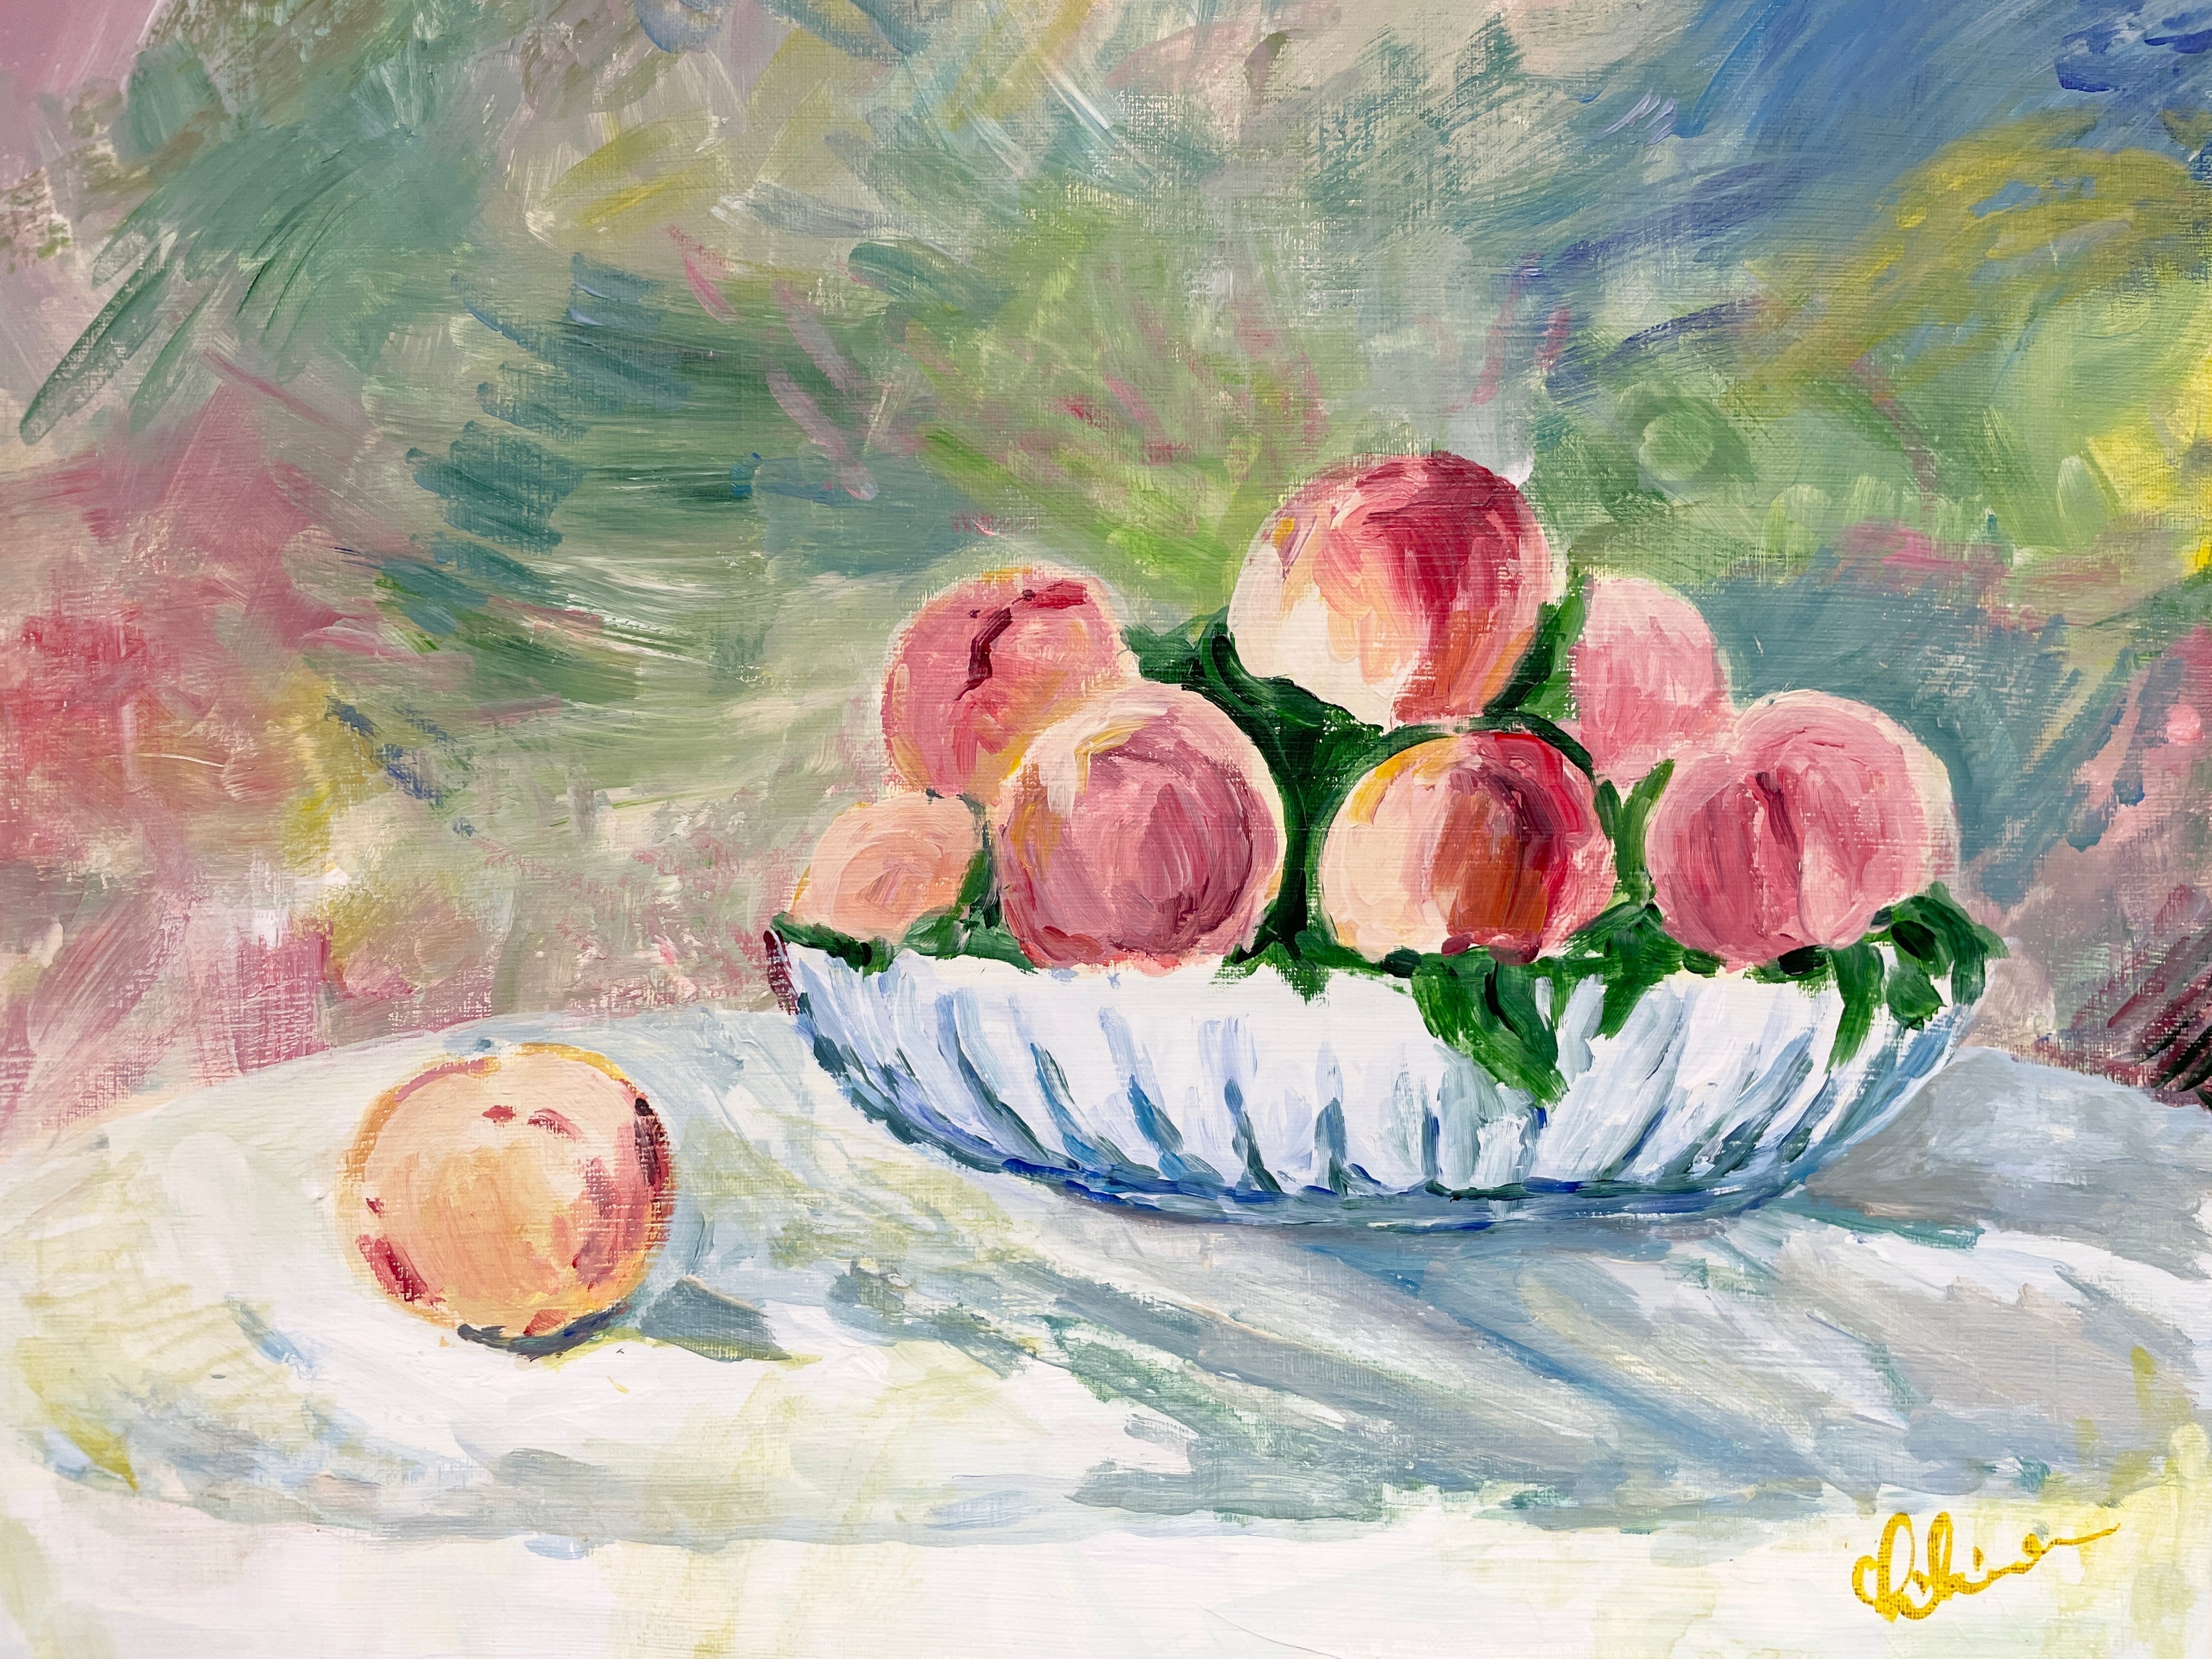 06月30日 (日) 13:00-16:00 | 上野/根津 | オーギュスト・ルノワール | 桃の静物画 (Peach Still-life Painting by Pierre-Auguste Renoir at Ueno/Nezu)